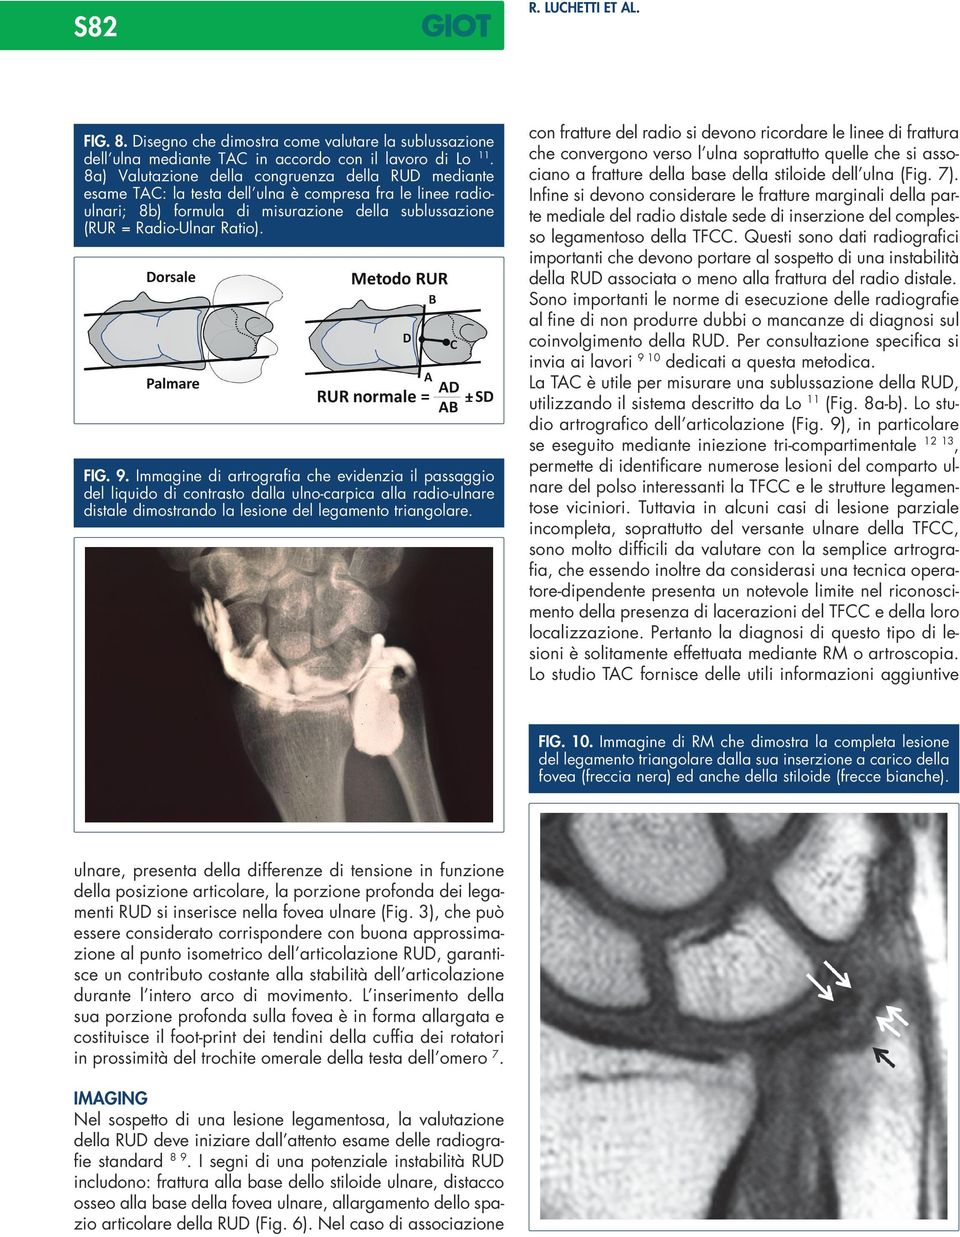 Immagine di artrografia che evidenzia il passaggio del liquido di contrasto dalla ulno-carpica alla radio-ulnare distale dimostrando la lesione del legamento triangolare.